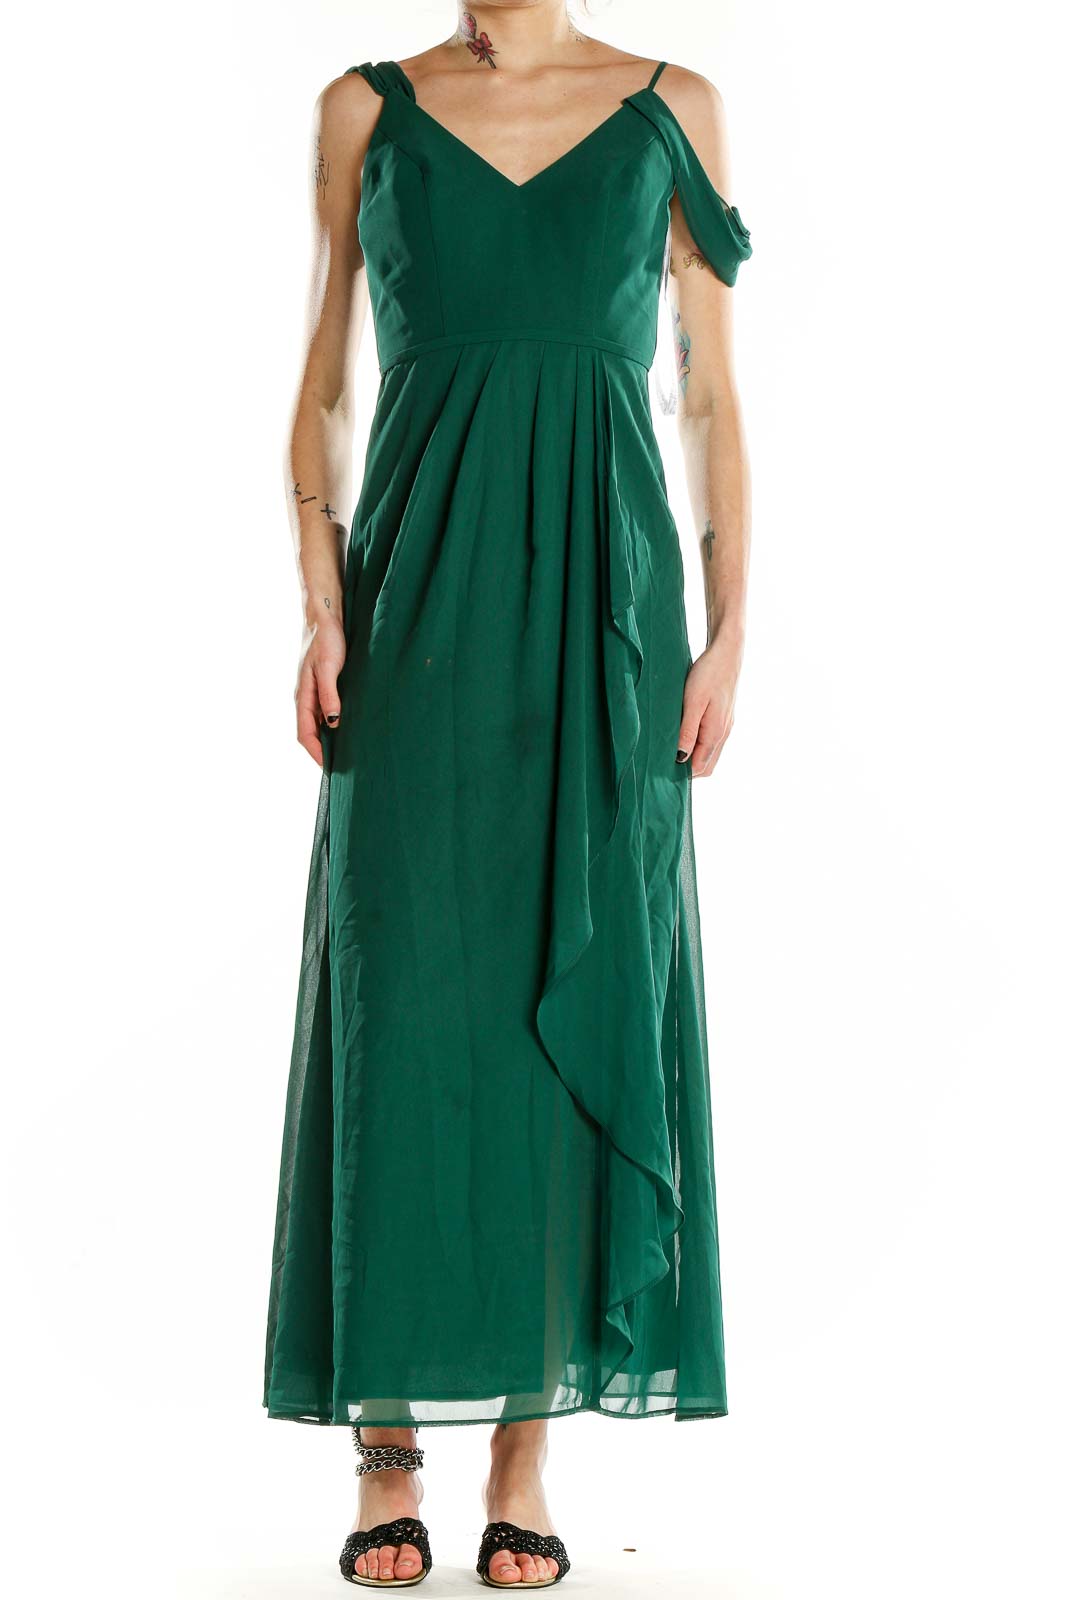 Green Evening Dress Front